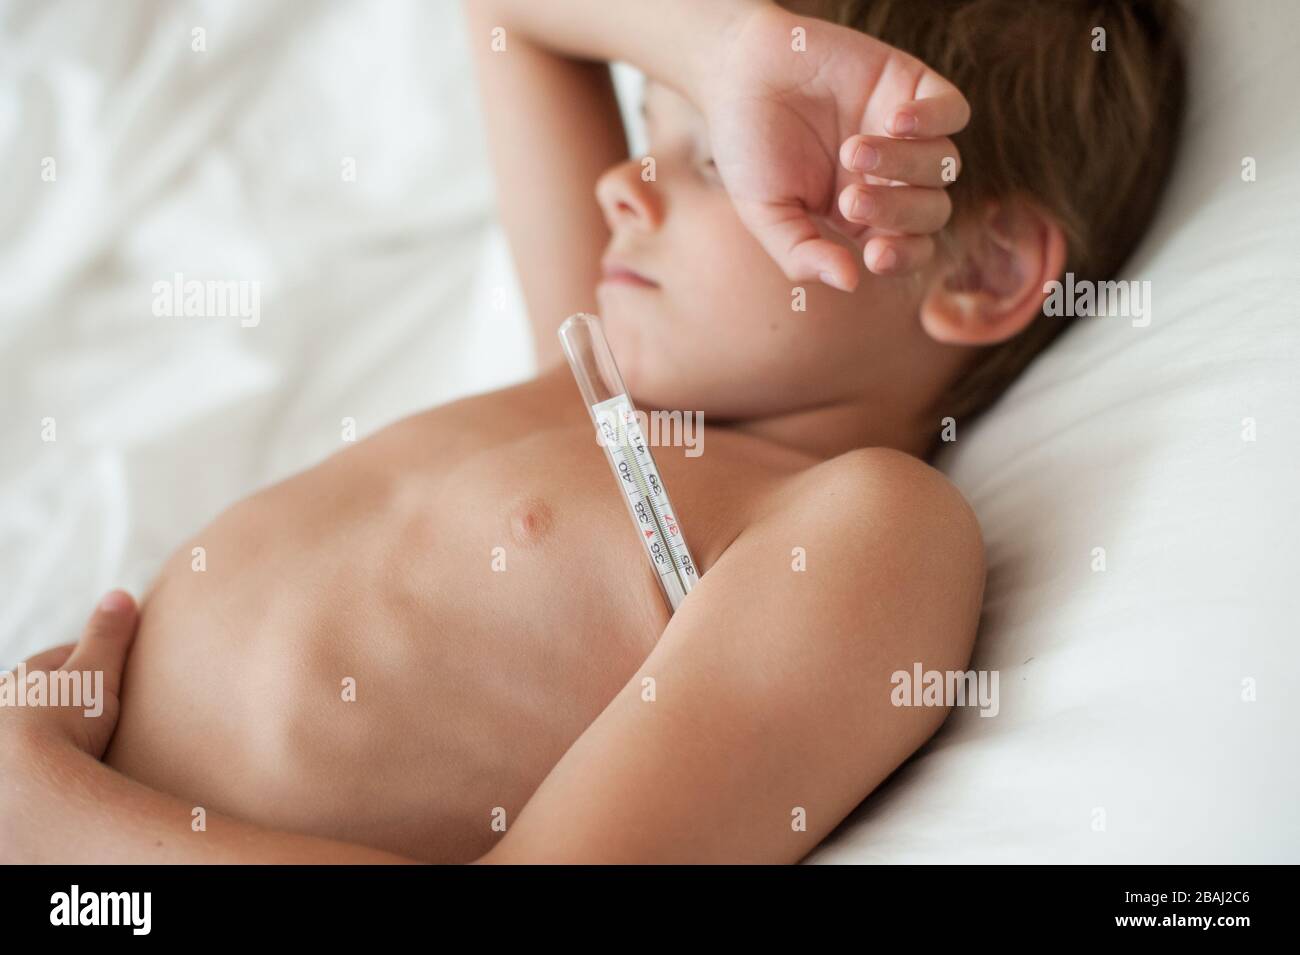 Kranker kleiner Junge mit hoher Temperatur, der im Bett mit Thermometer unter dem Arm während der Kovid-19-Epidemie des Pandemieausbruchs liegt Stockfoto